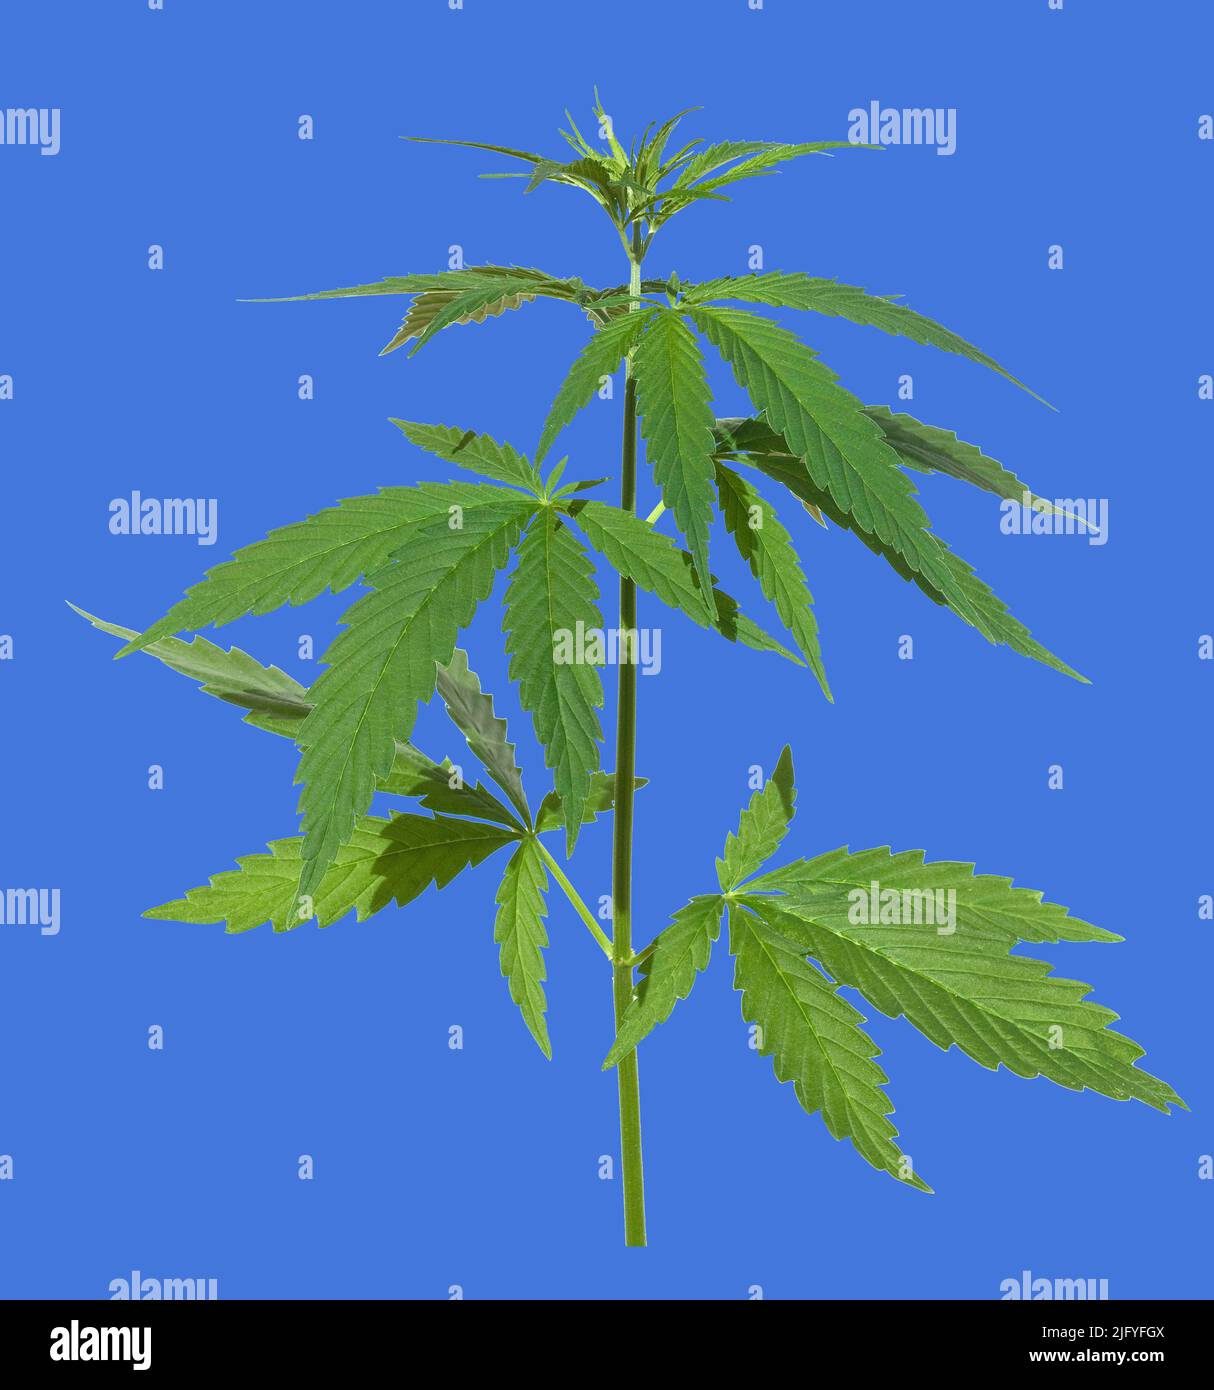 Hanf, cannabis indica ist eine Nutz- und Rauschgiftpflanze die auch in der Medzin eingesetzt wird. Cáñamo, cannabis indica es un plan útil y narcótico Foto de stock